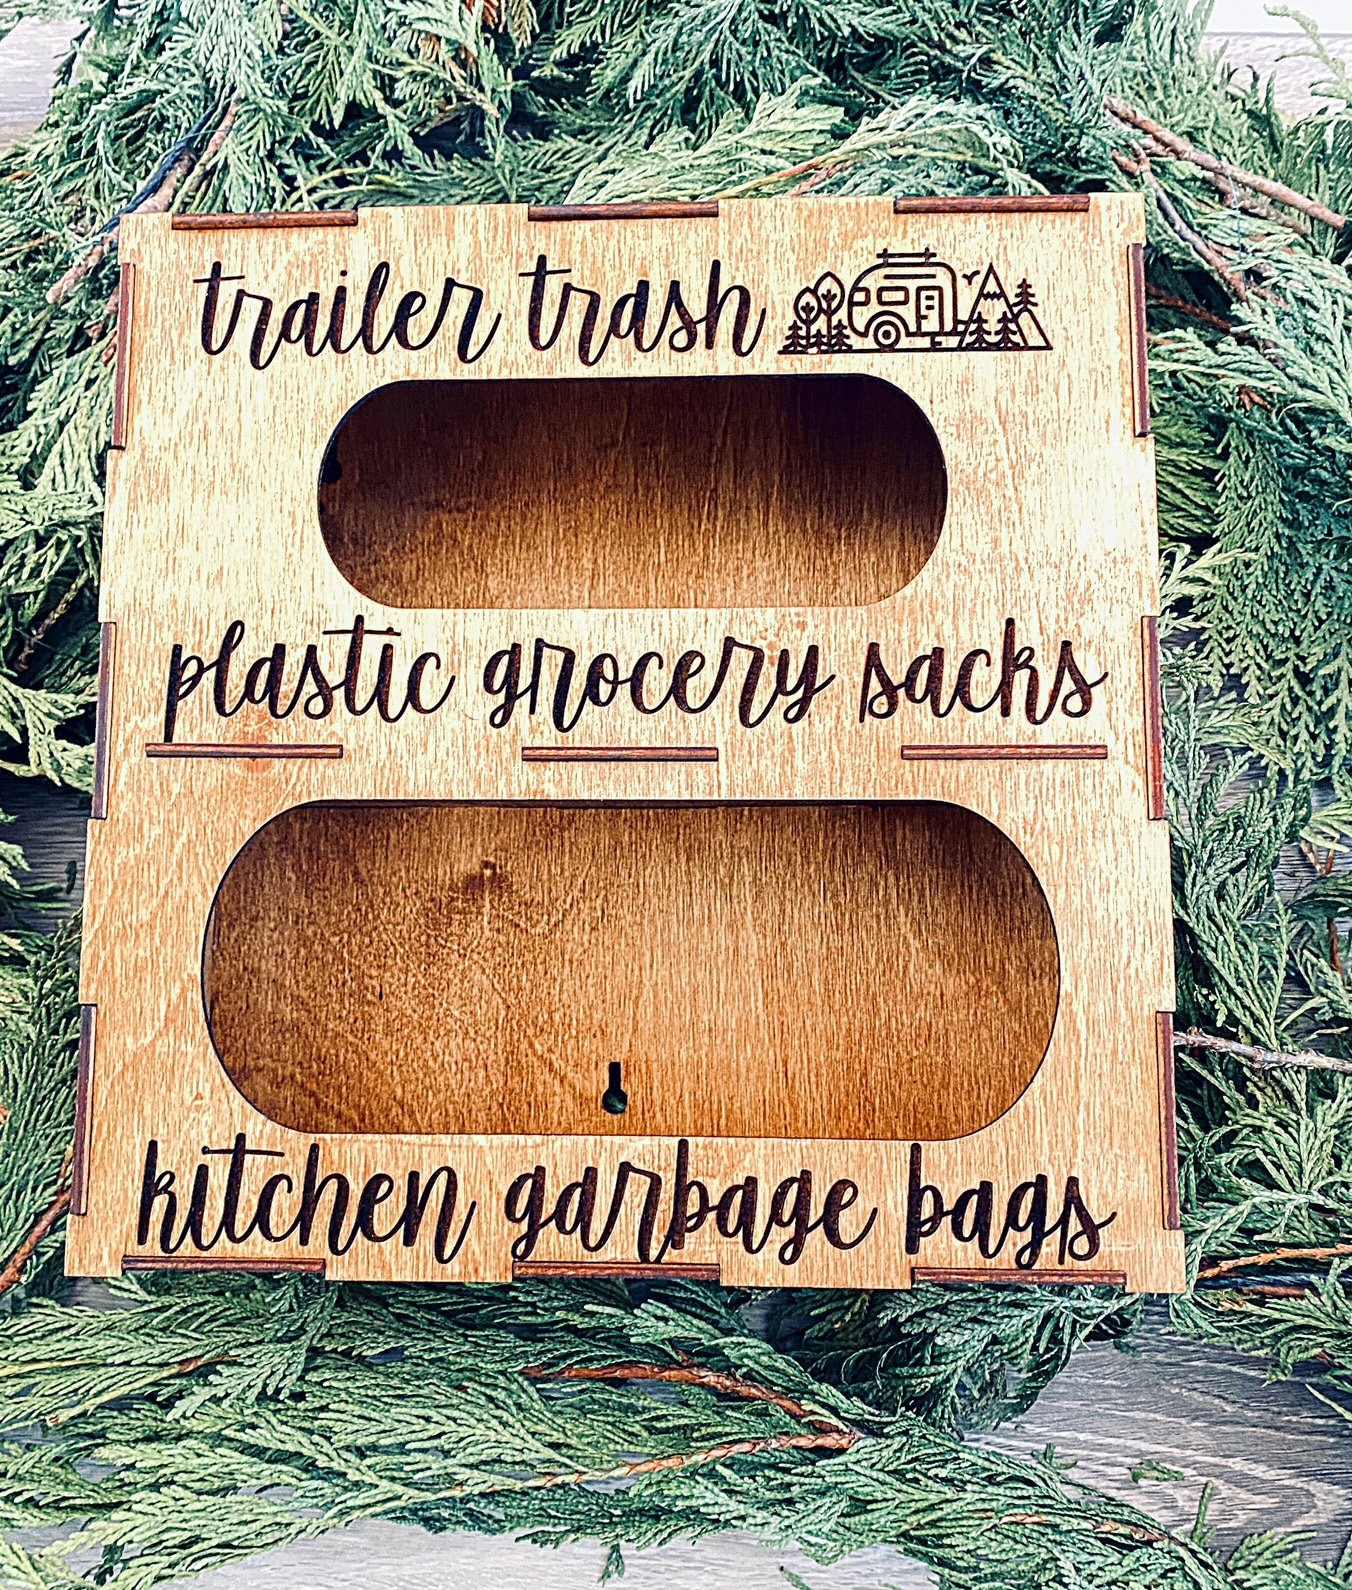 Wooden Trash Bag Holder with Plastic Bag Holder Set, Wall-Mount Trash Bag  Dispenser & Grocery